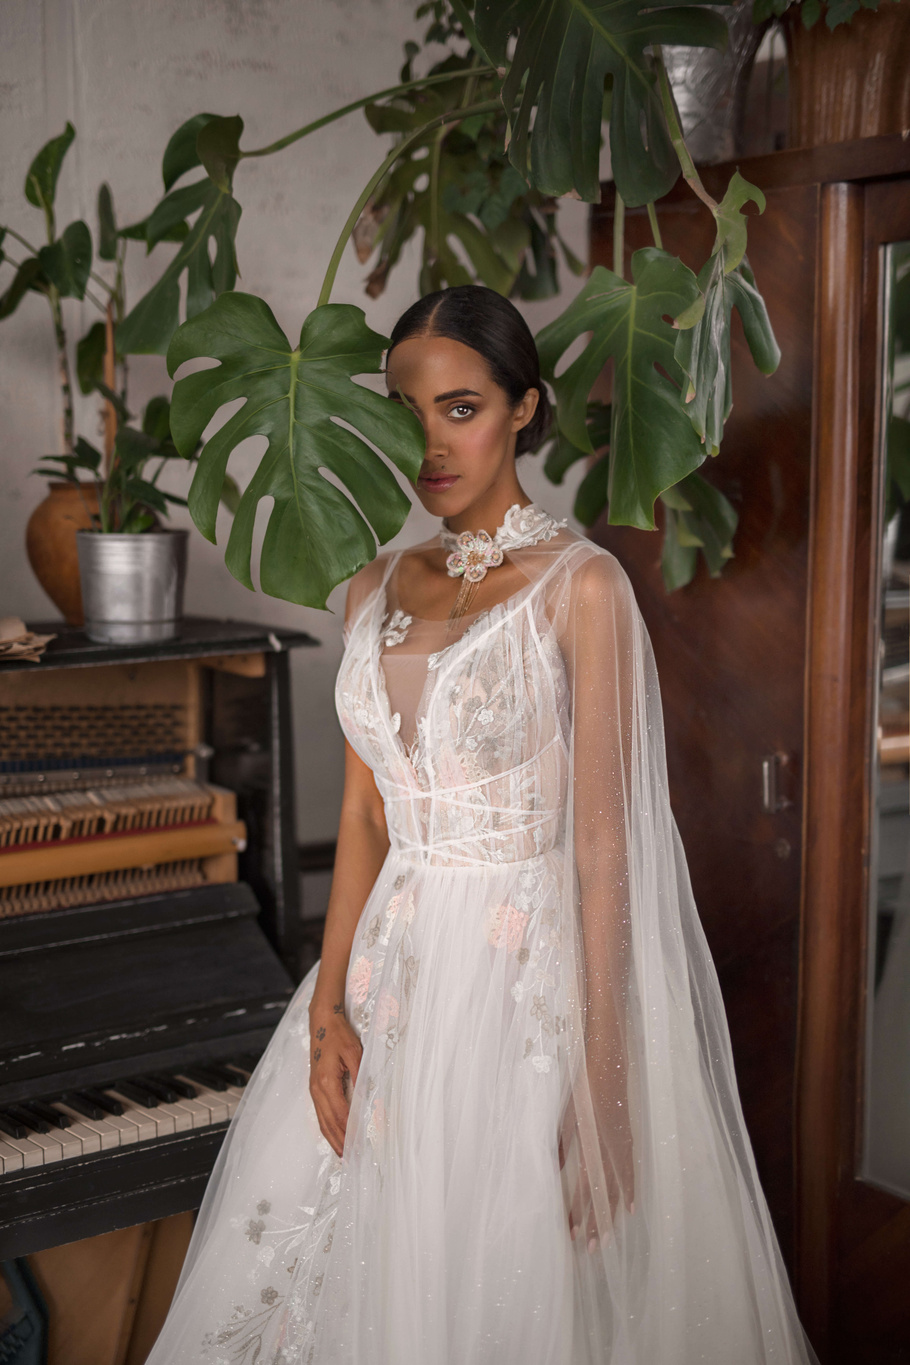 Купить свадебное платье «Санни» Бламмо Биамо из коллекции Нимфа 2020 года в Москве